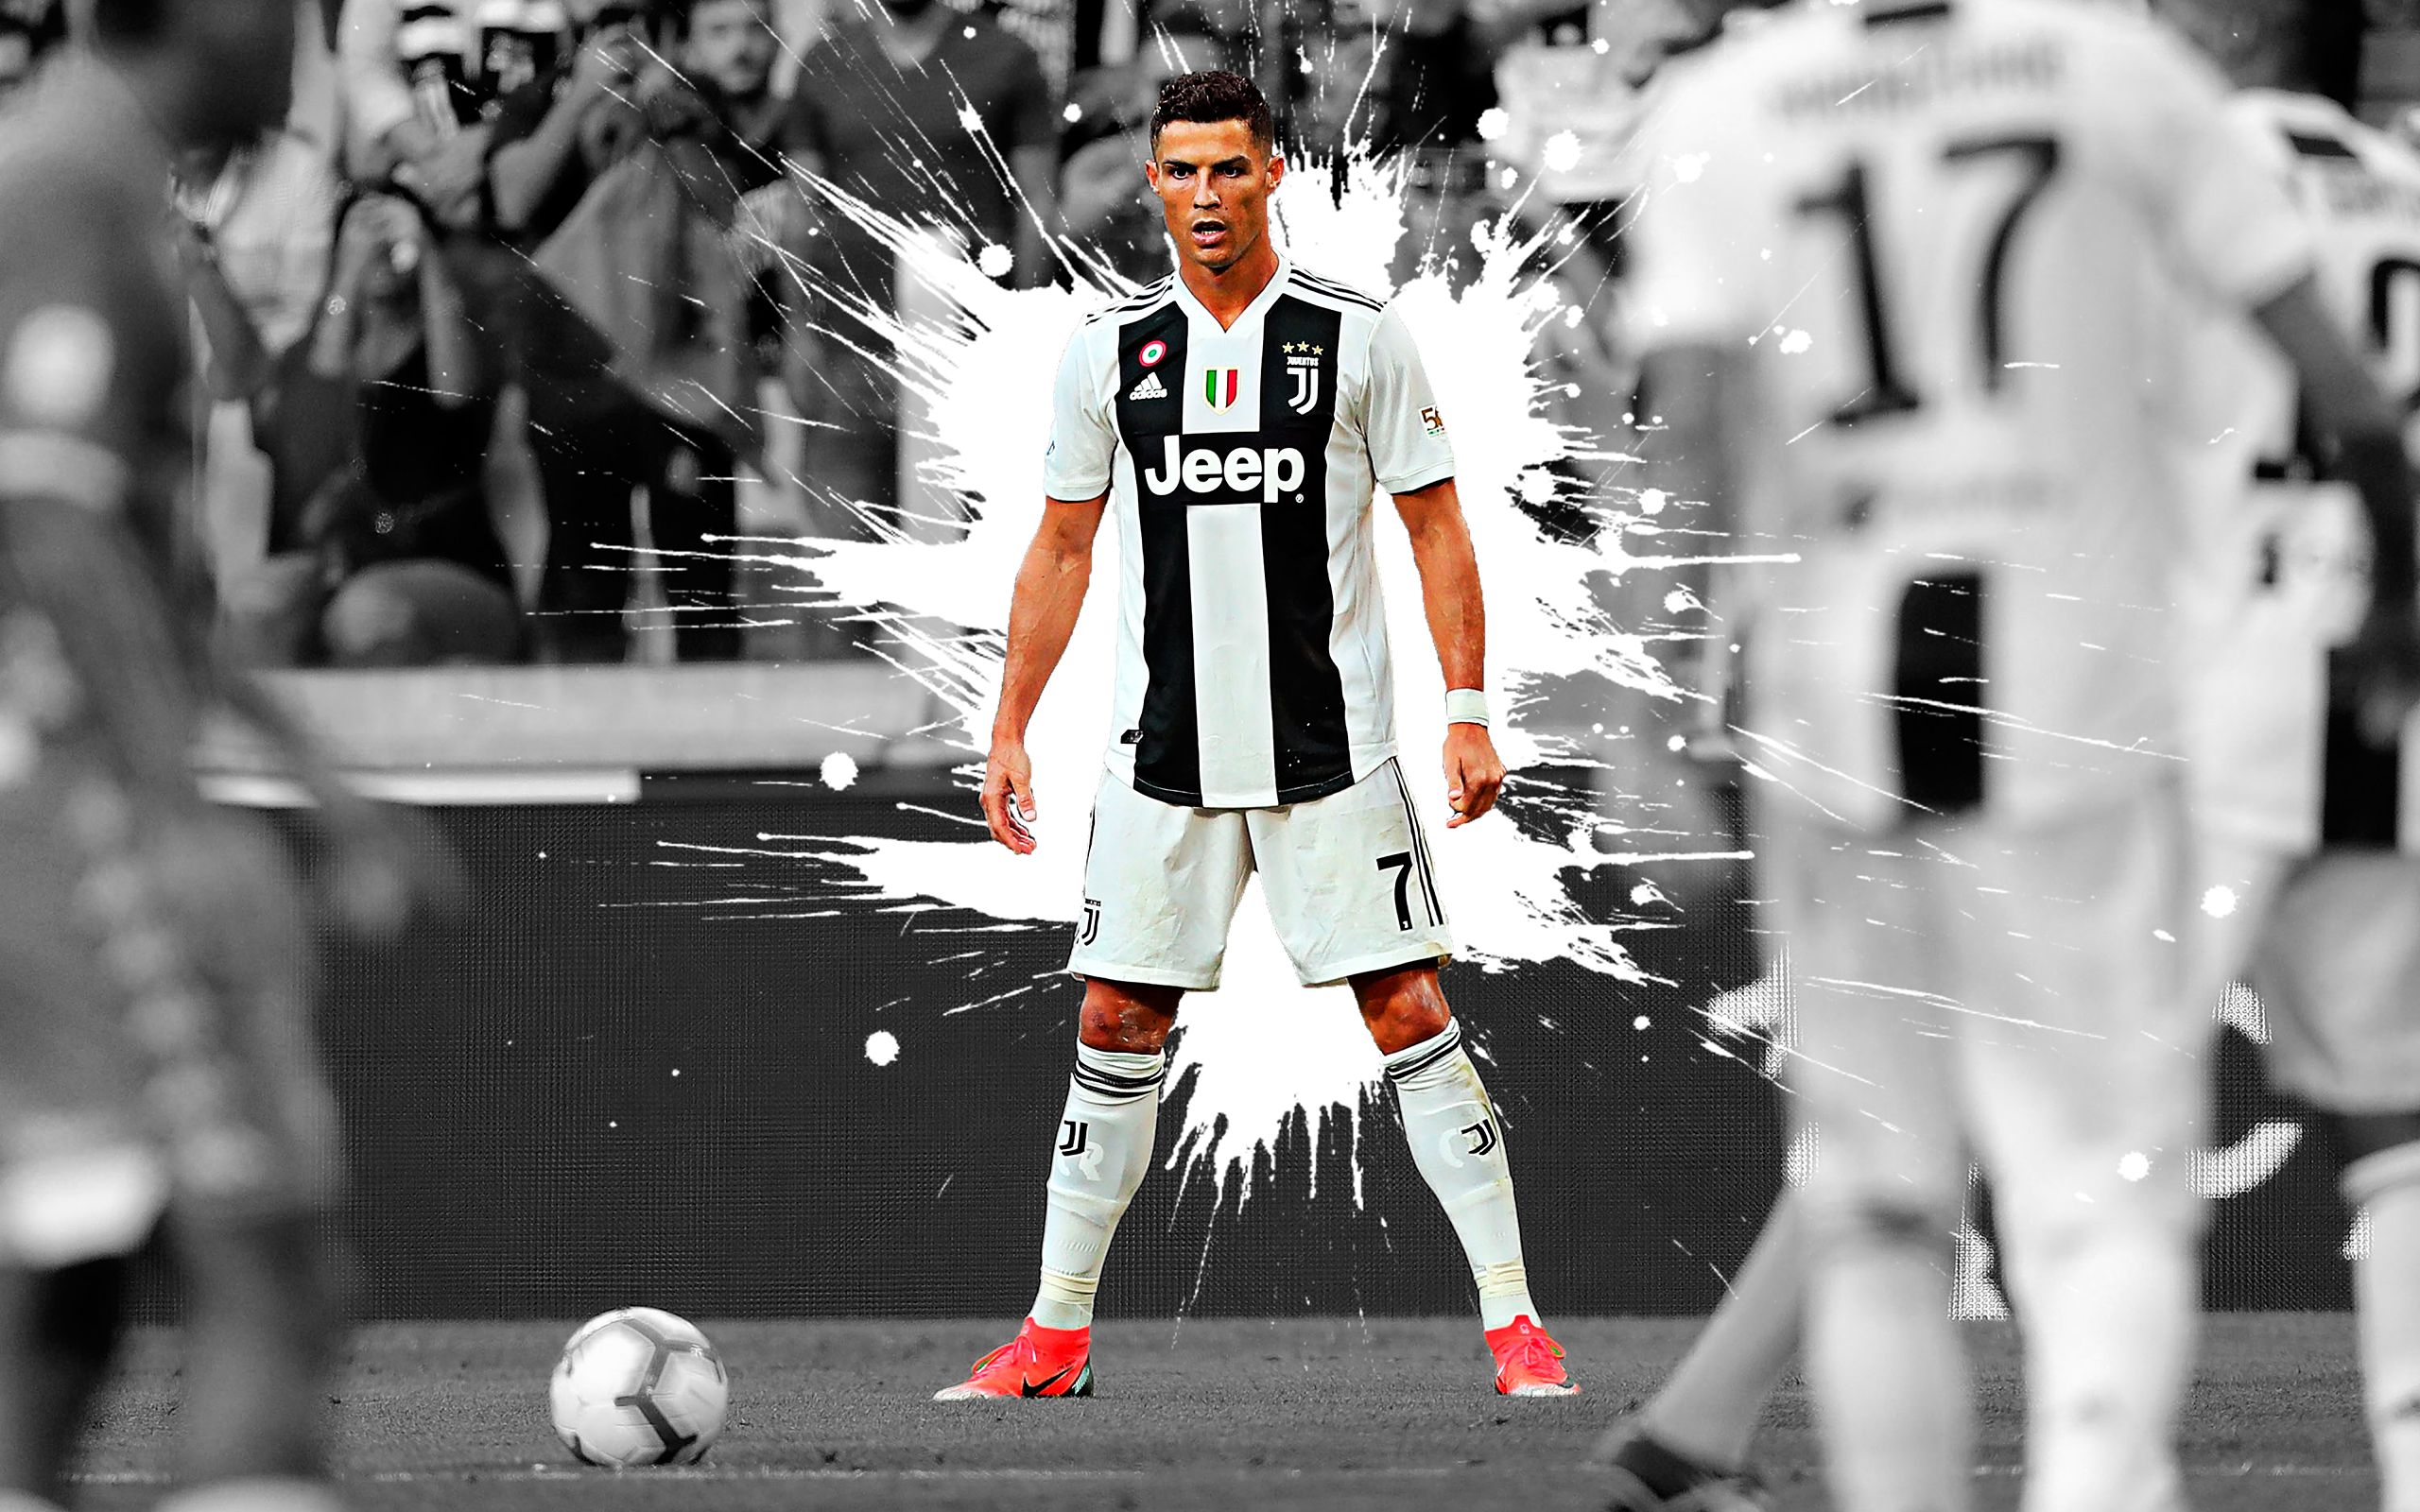 Ronaldo Juventus HD Wallpapers 